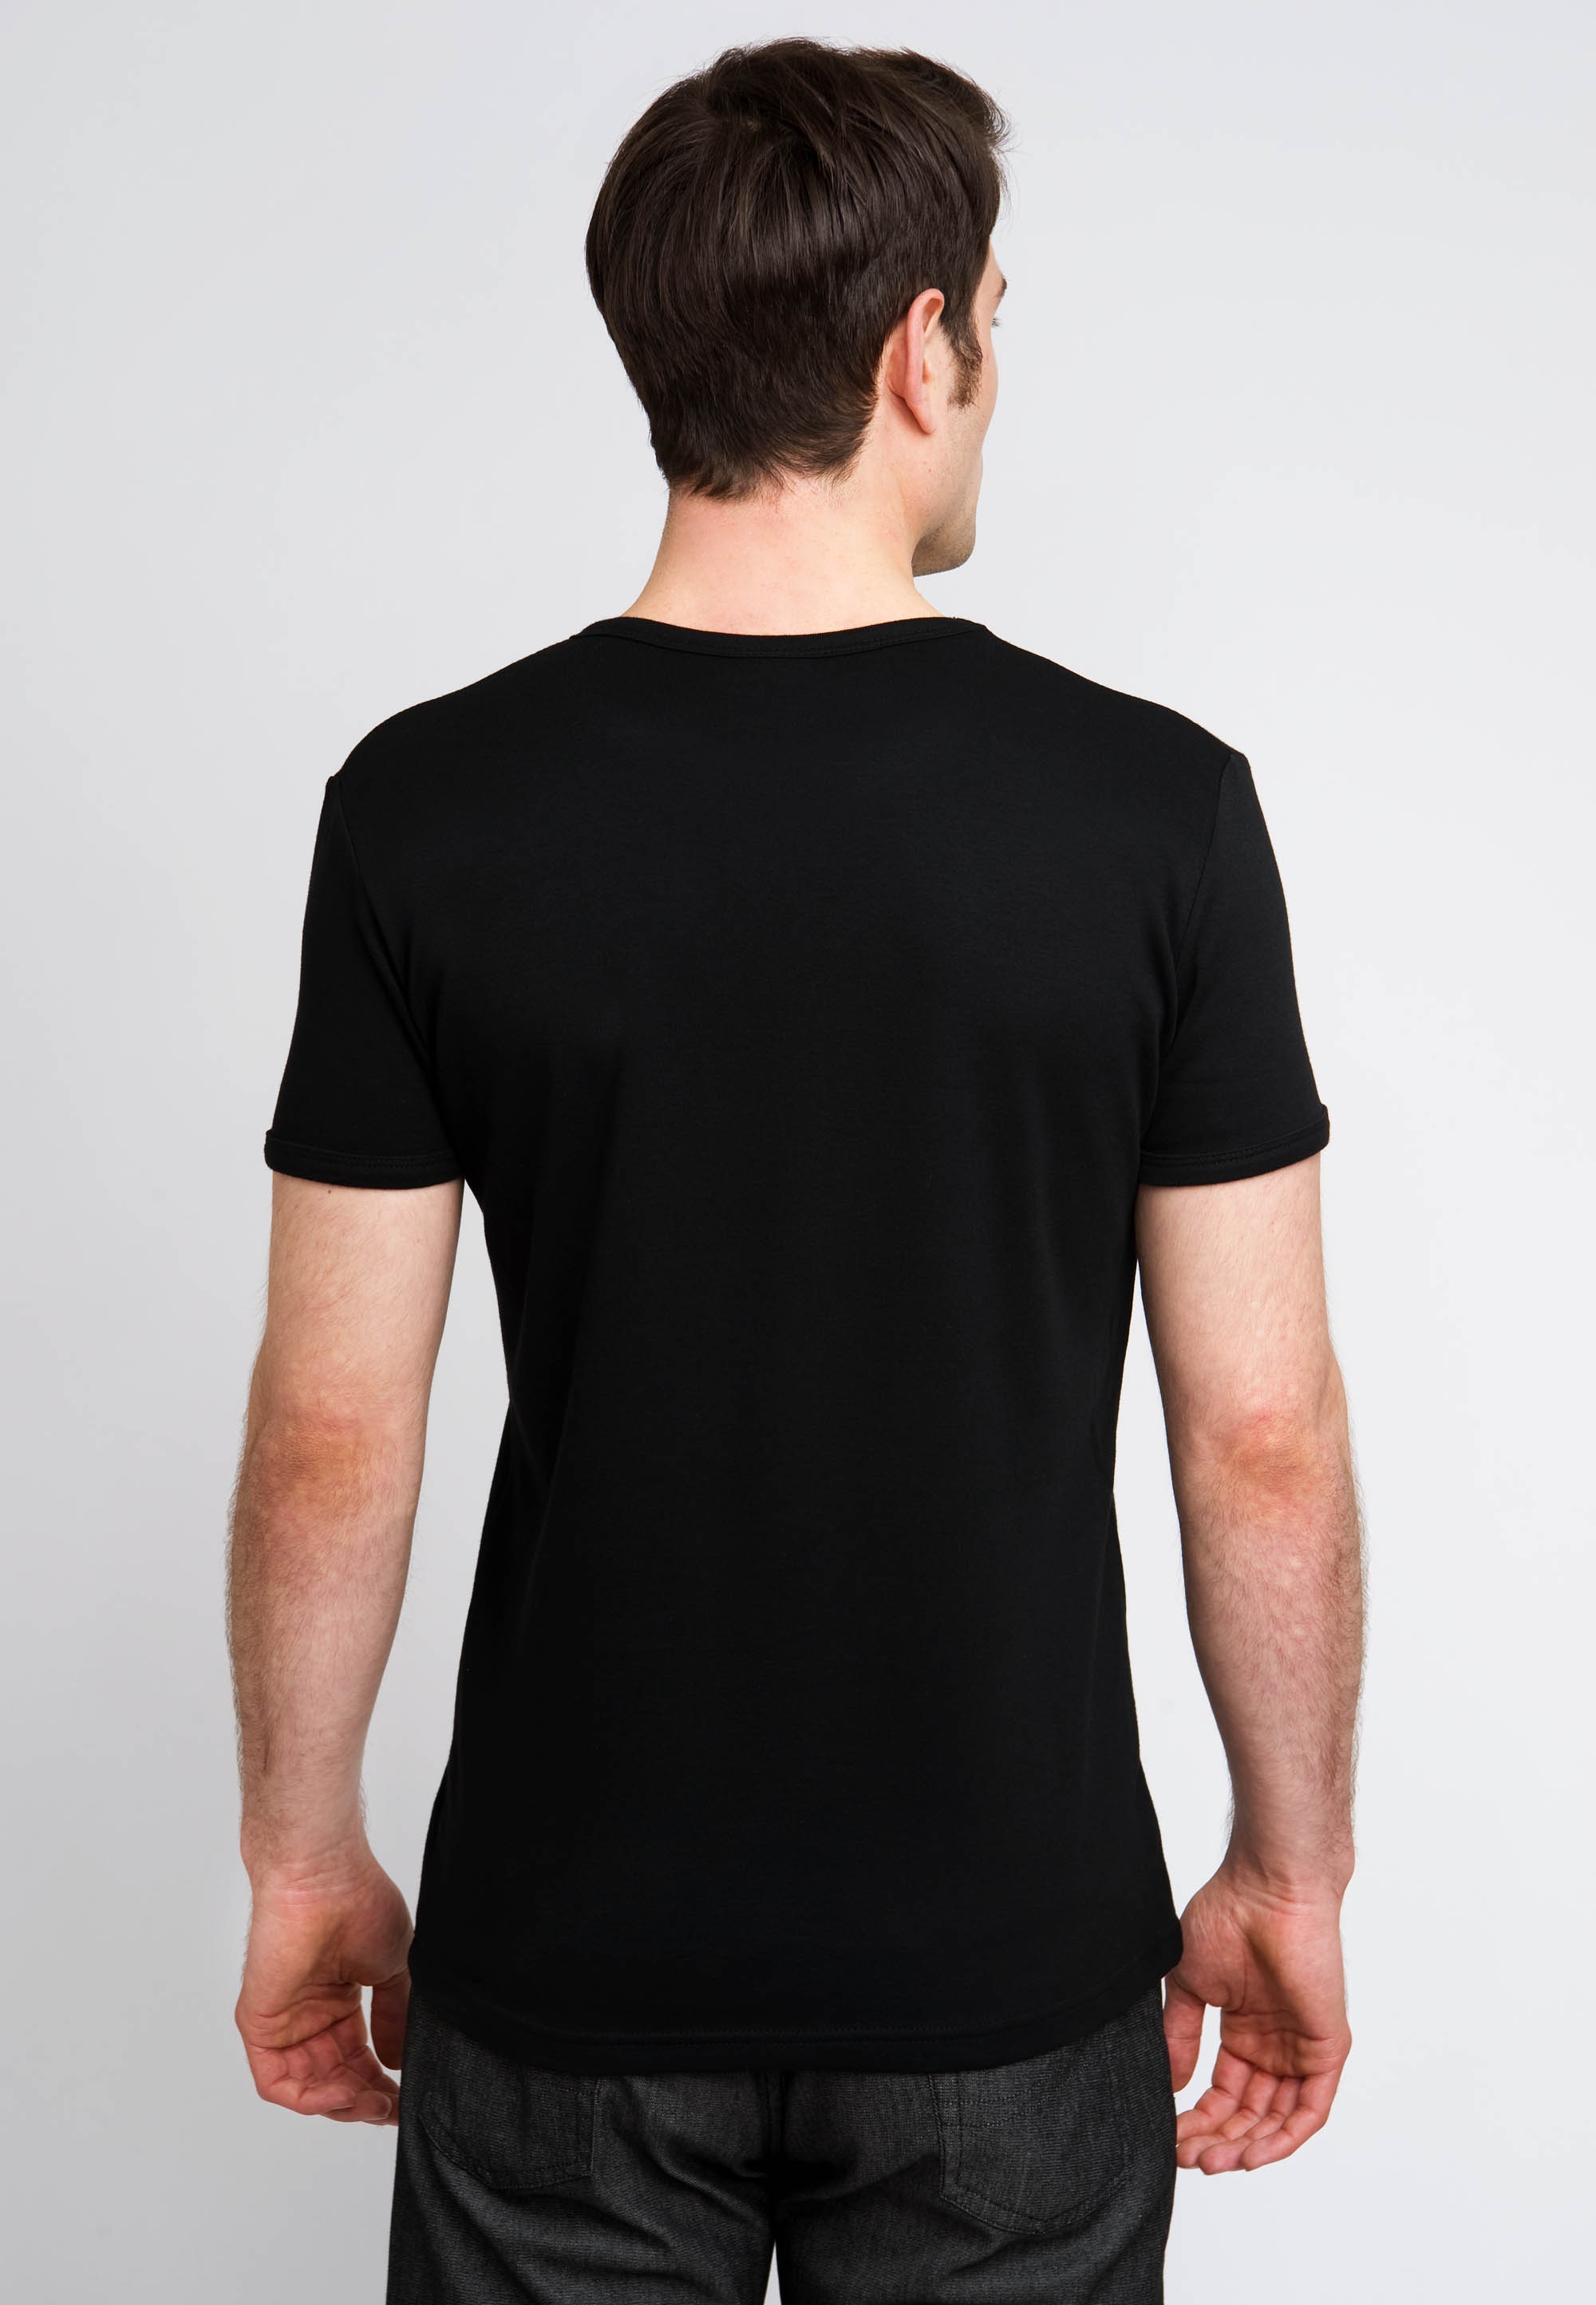 LOGOSHIRT T-Shirt »The Riddler«, mit coolem Frontprint